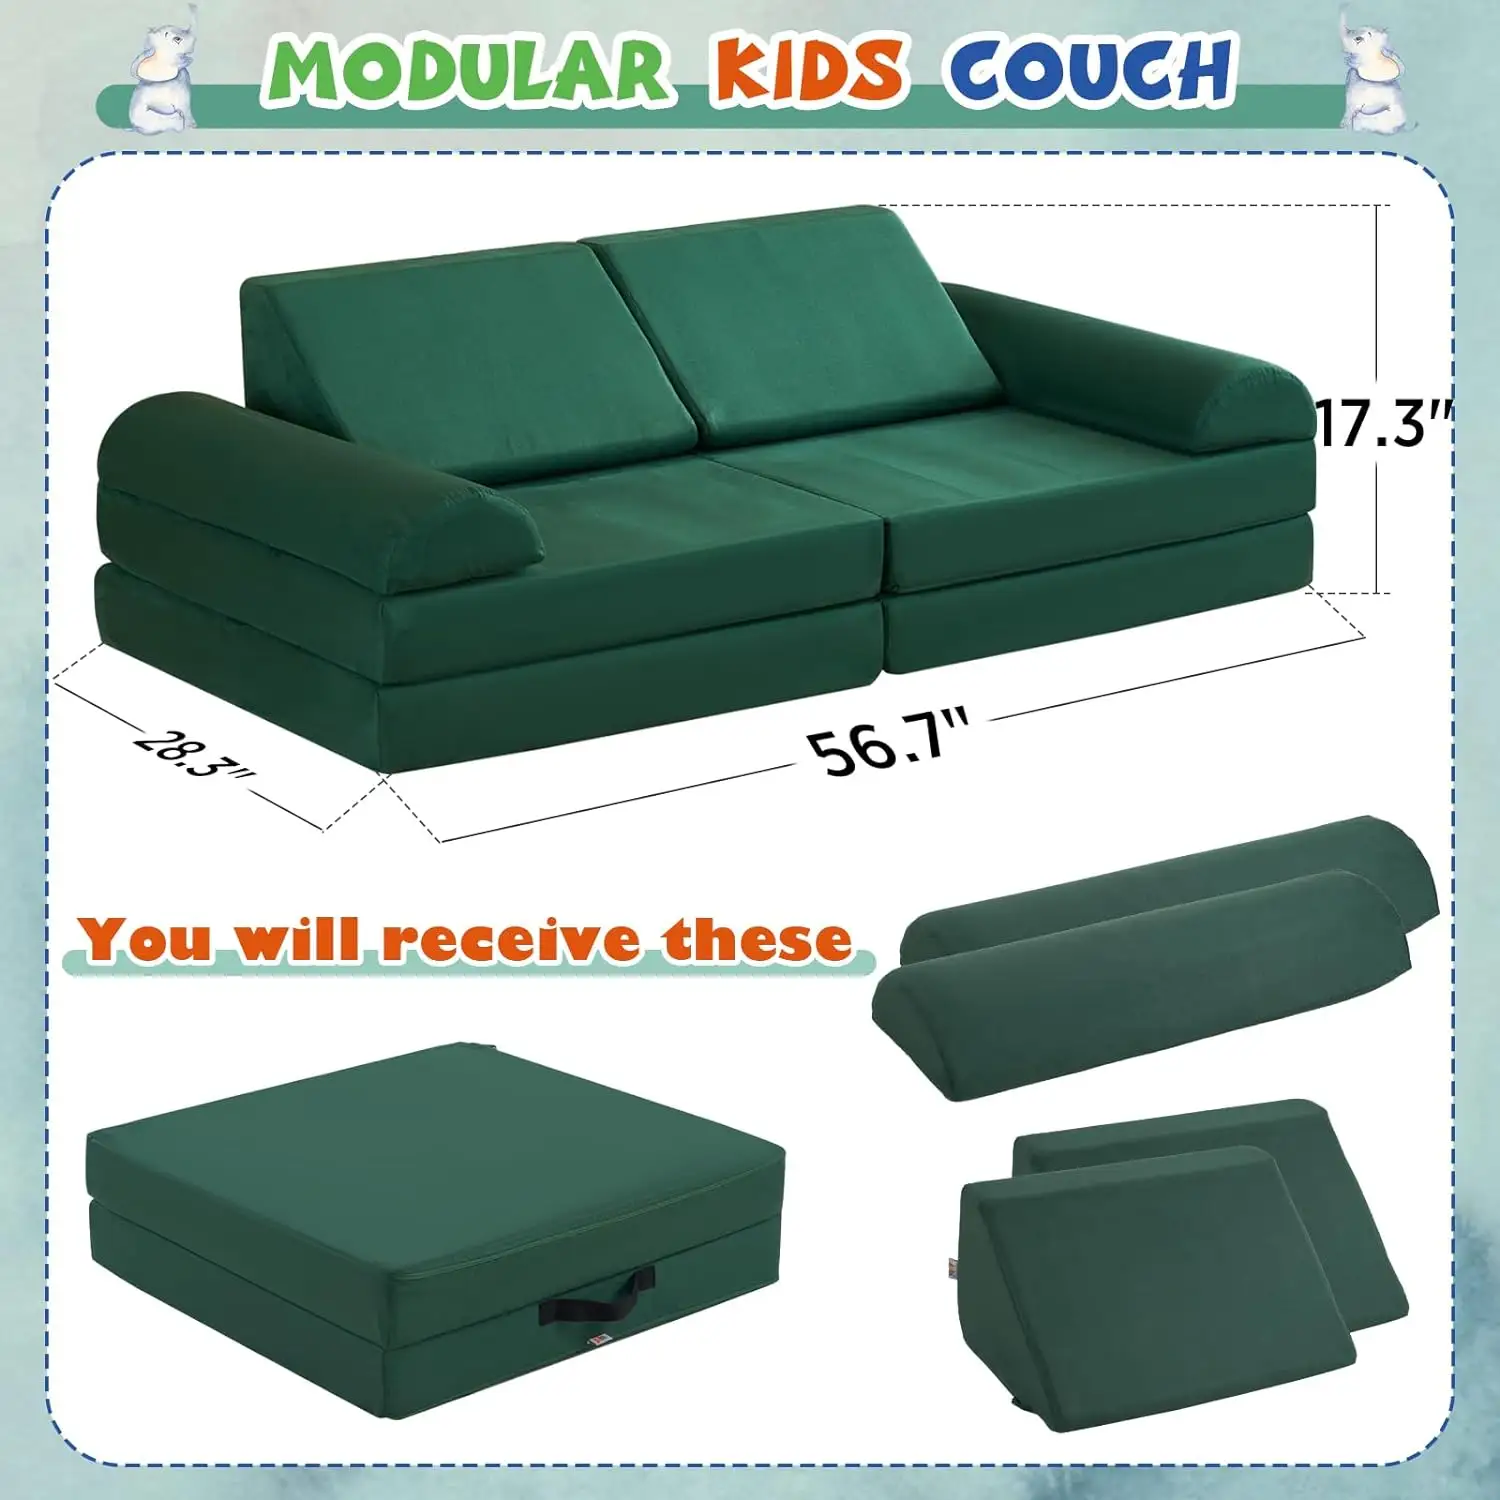 Großhandel modulares Kinderssofa Kinder spielen Couch großer Bodensofa modulare Möbel für Kinder Erwachsene Kleinkinder Babys